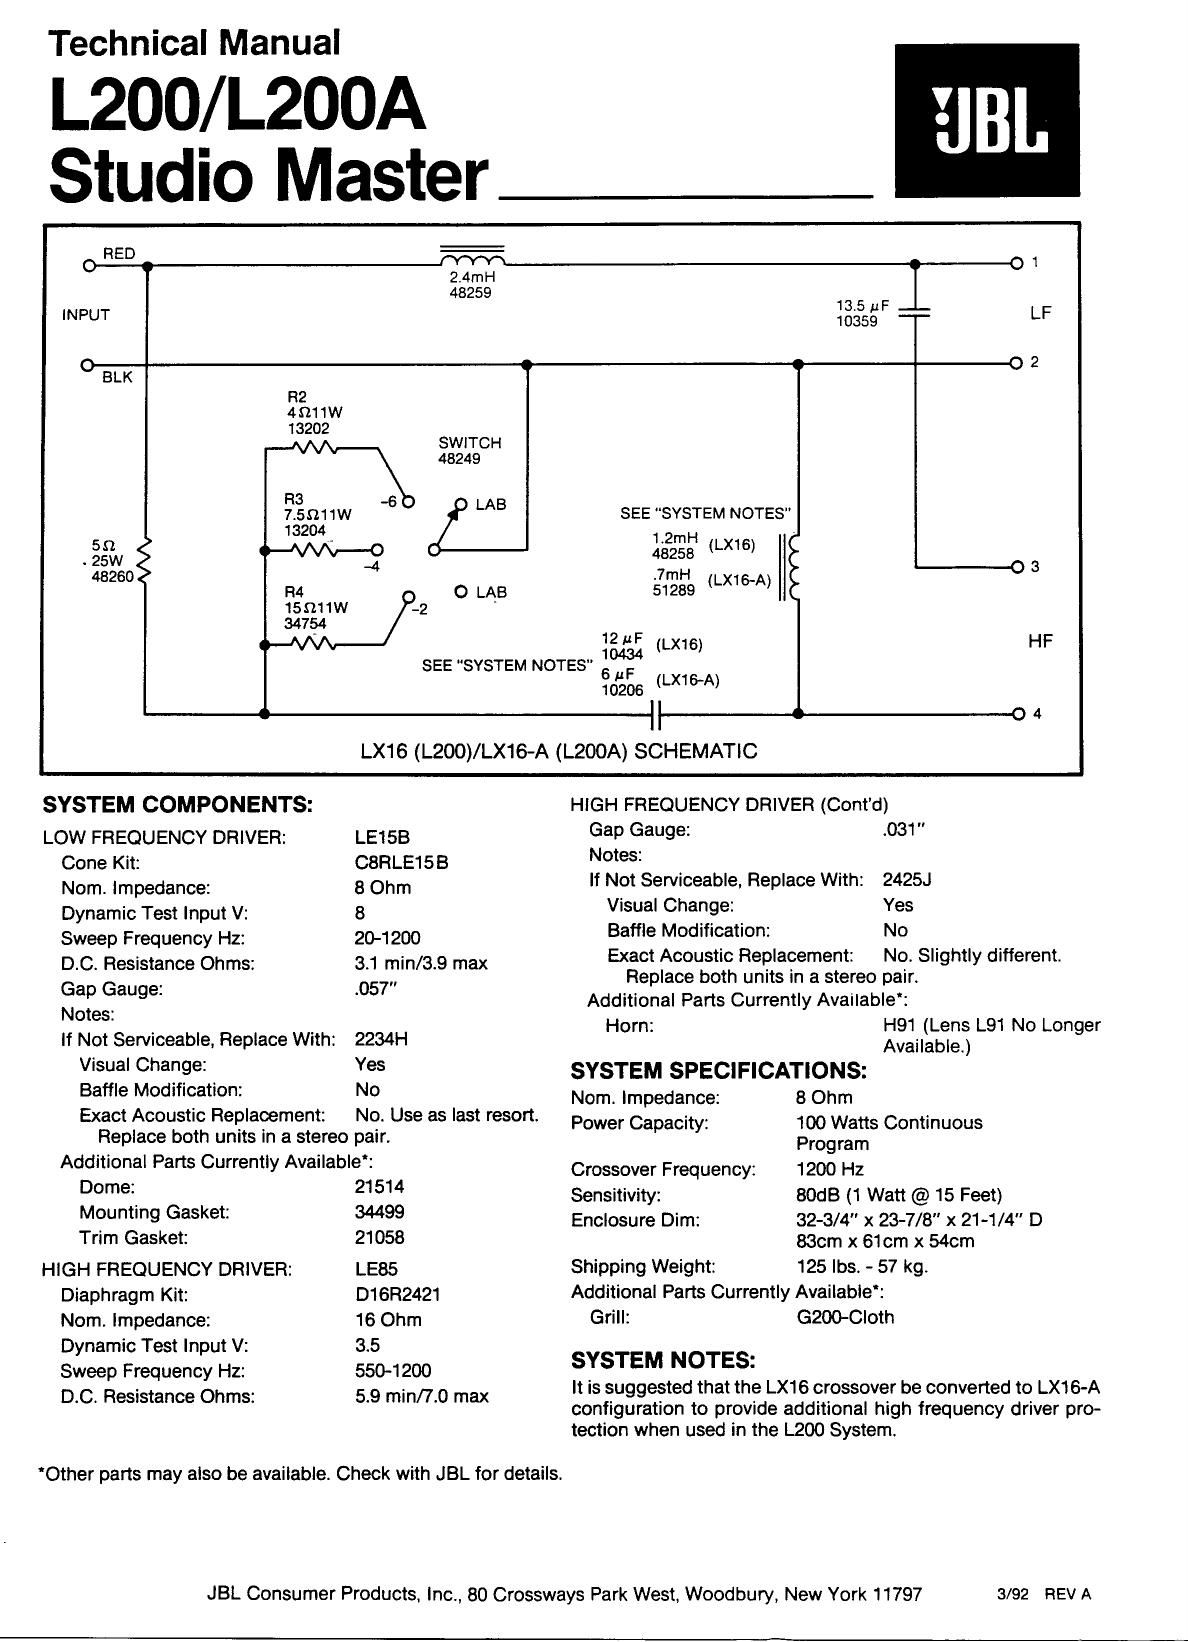 Jbl L 200A Technical Manual